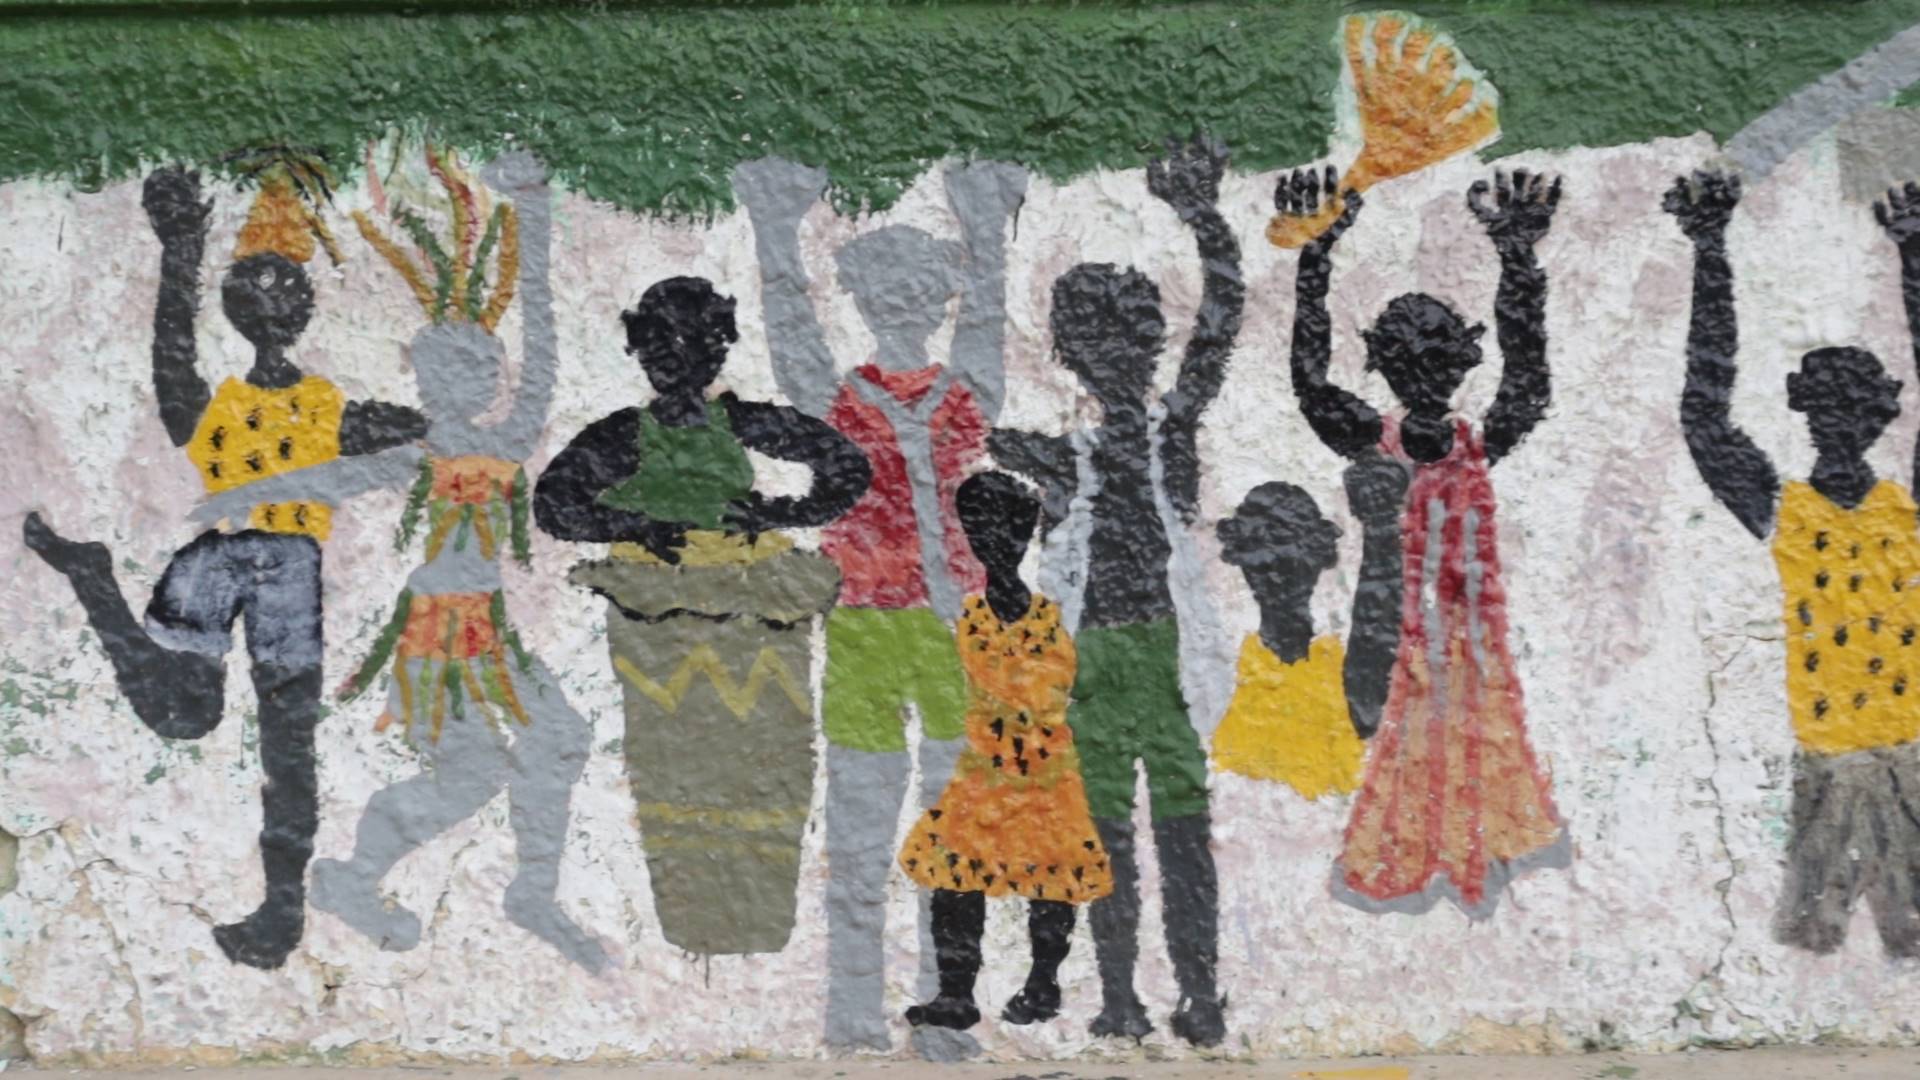 Mural en una calle del Consejo Comunitario Eladio Ariza del Municipio de San Cristobal, San Jacinto, parte alta. Montes de María. Comunidad negra danzando al ritmo de los tambores.